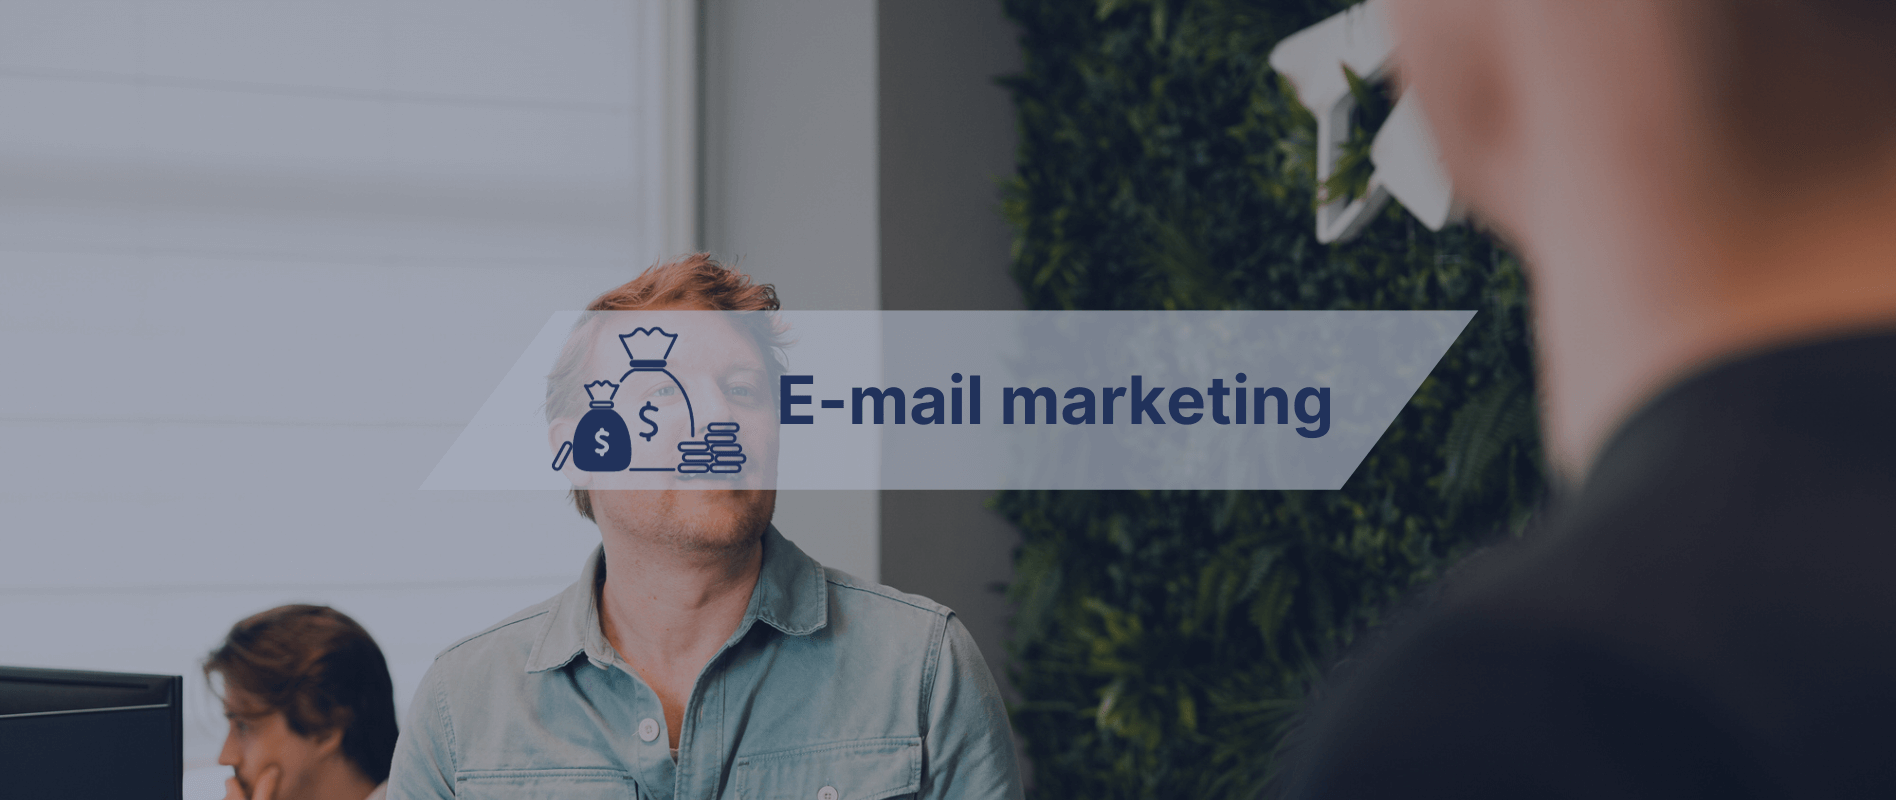 Deze 7 tips verbeteren je e-mail marketing tijdens de feestdagen